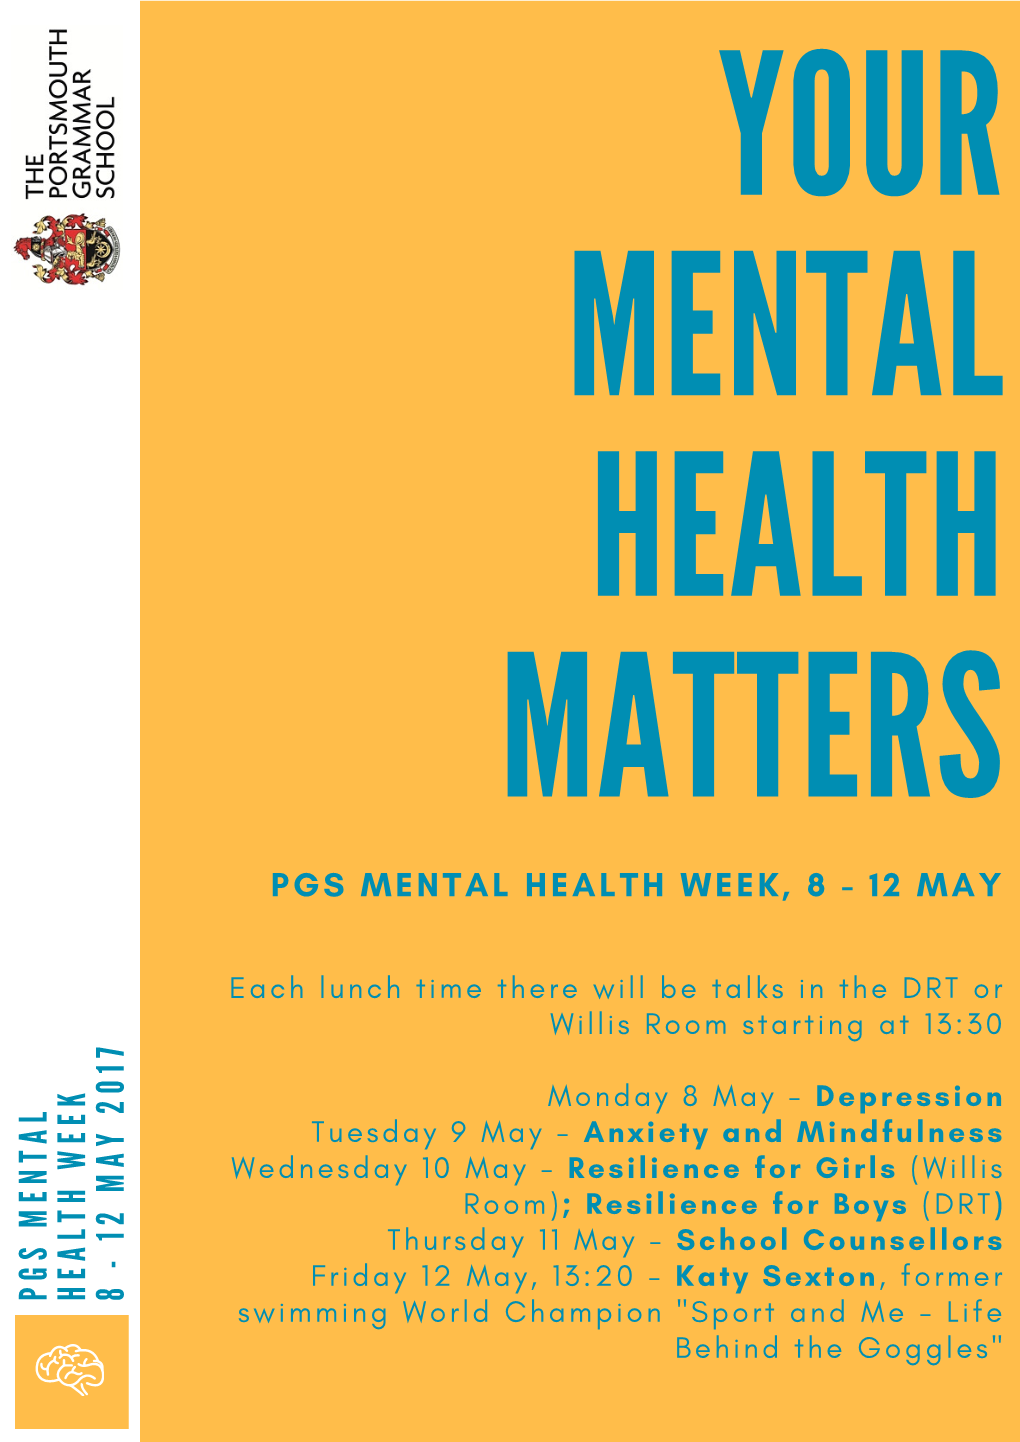 PGS Mental Health Week 8